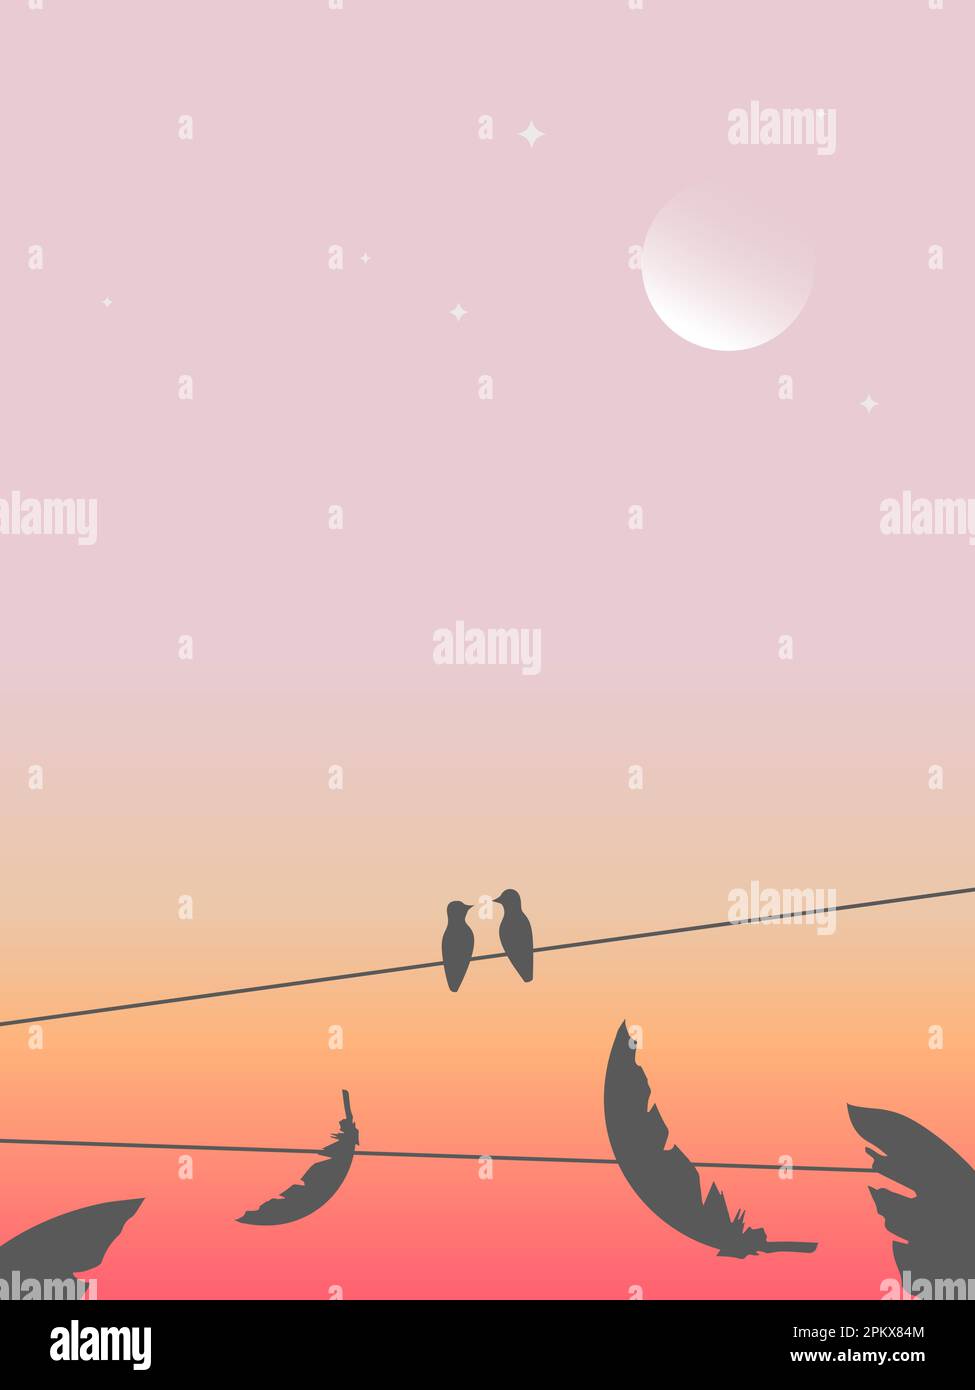 Illustrazione di due uccelli seduti su una linea metallica sullo sfondo del cielo notturno colorato, della luna e delle piume che cadono. Illustrazione Vettoriale